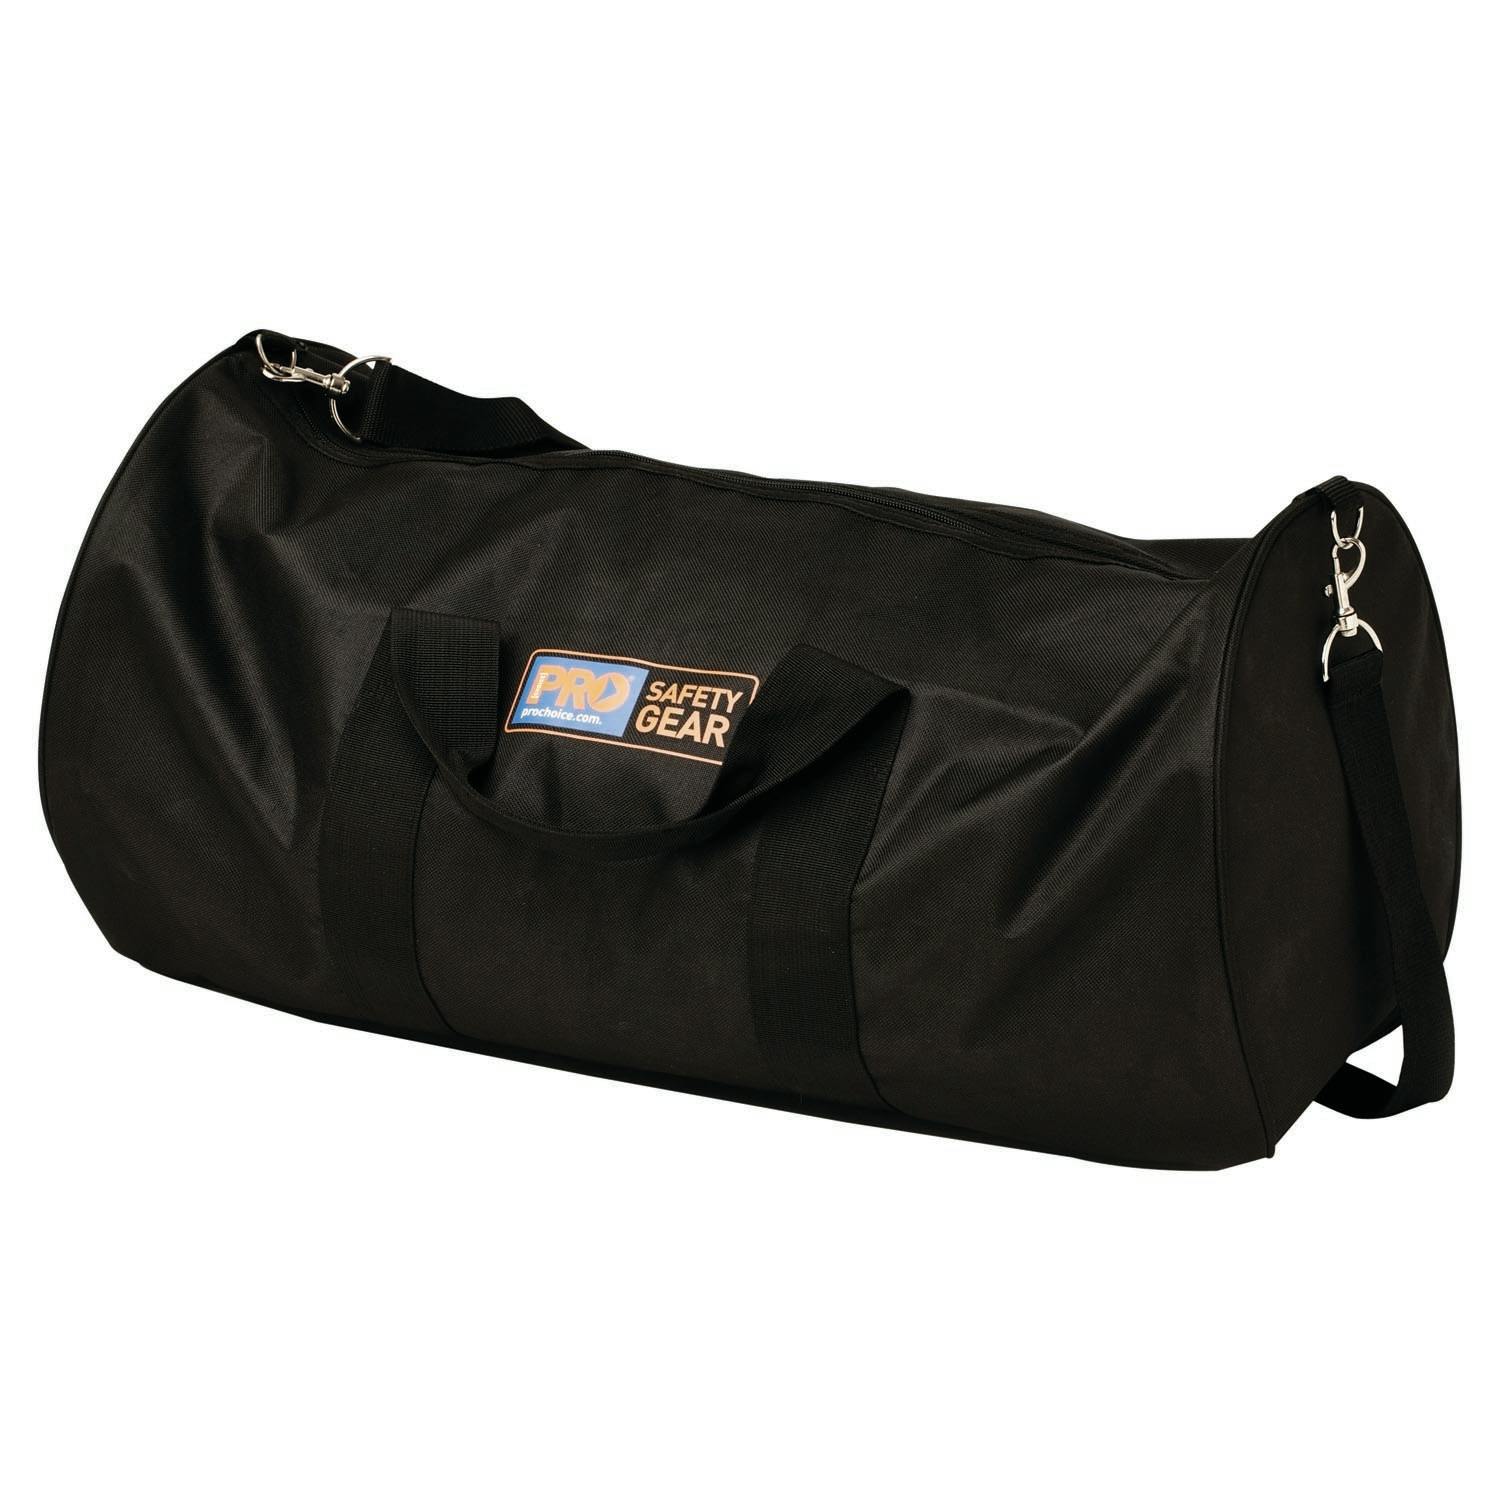 Pro Choice Safety Kit Bag Black